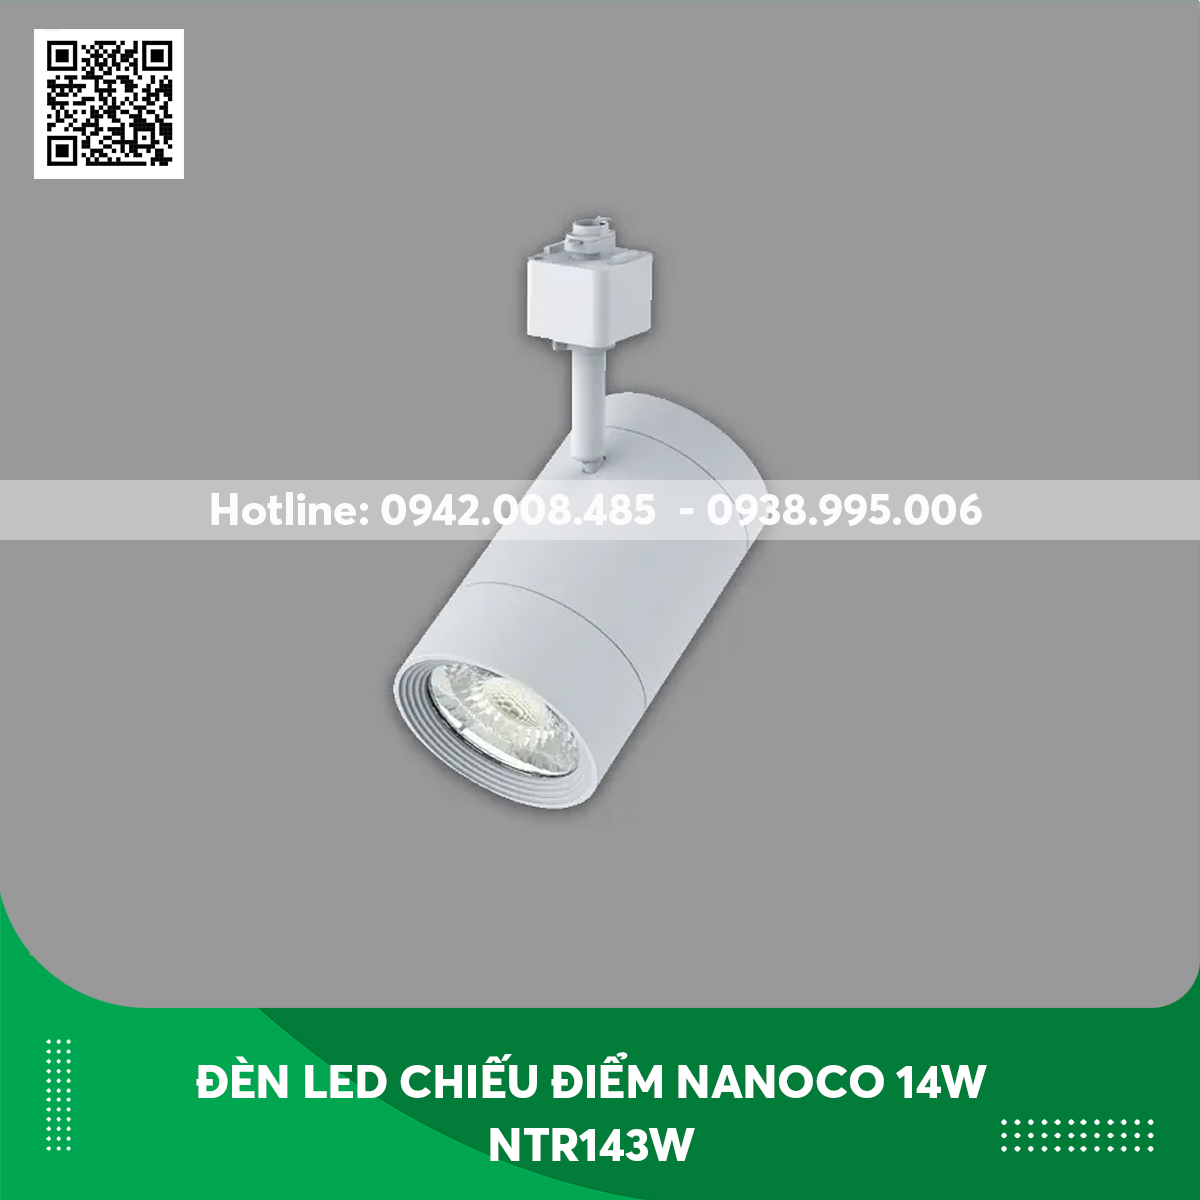 Đèn led chiếu điểm Nanoco 14w NTR143W thân trắng ánh sáng vàng